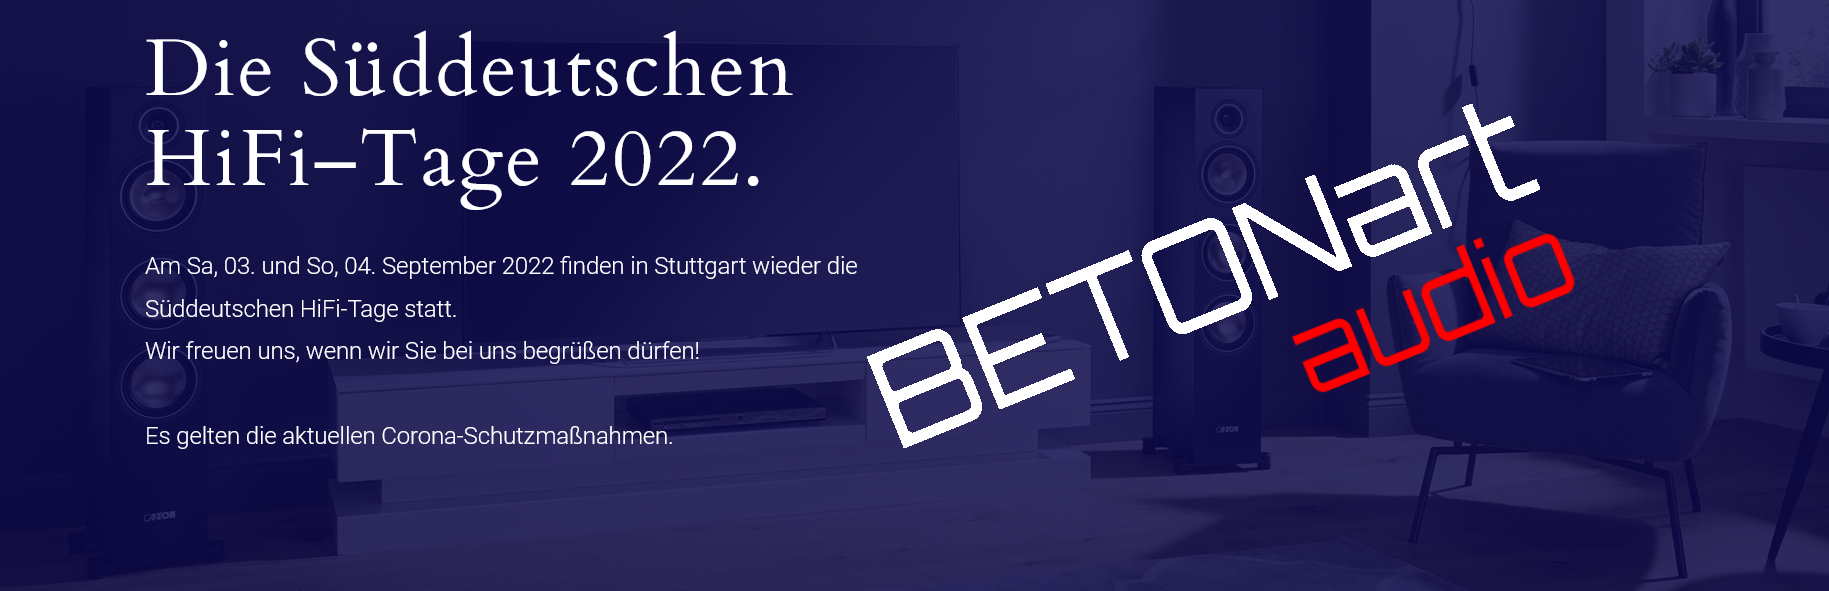 Süddeutsche HiFi-Tage 2022 7